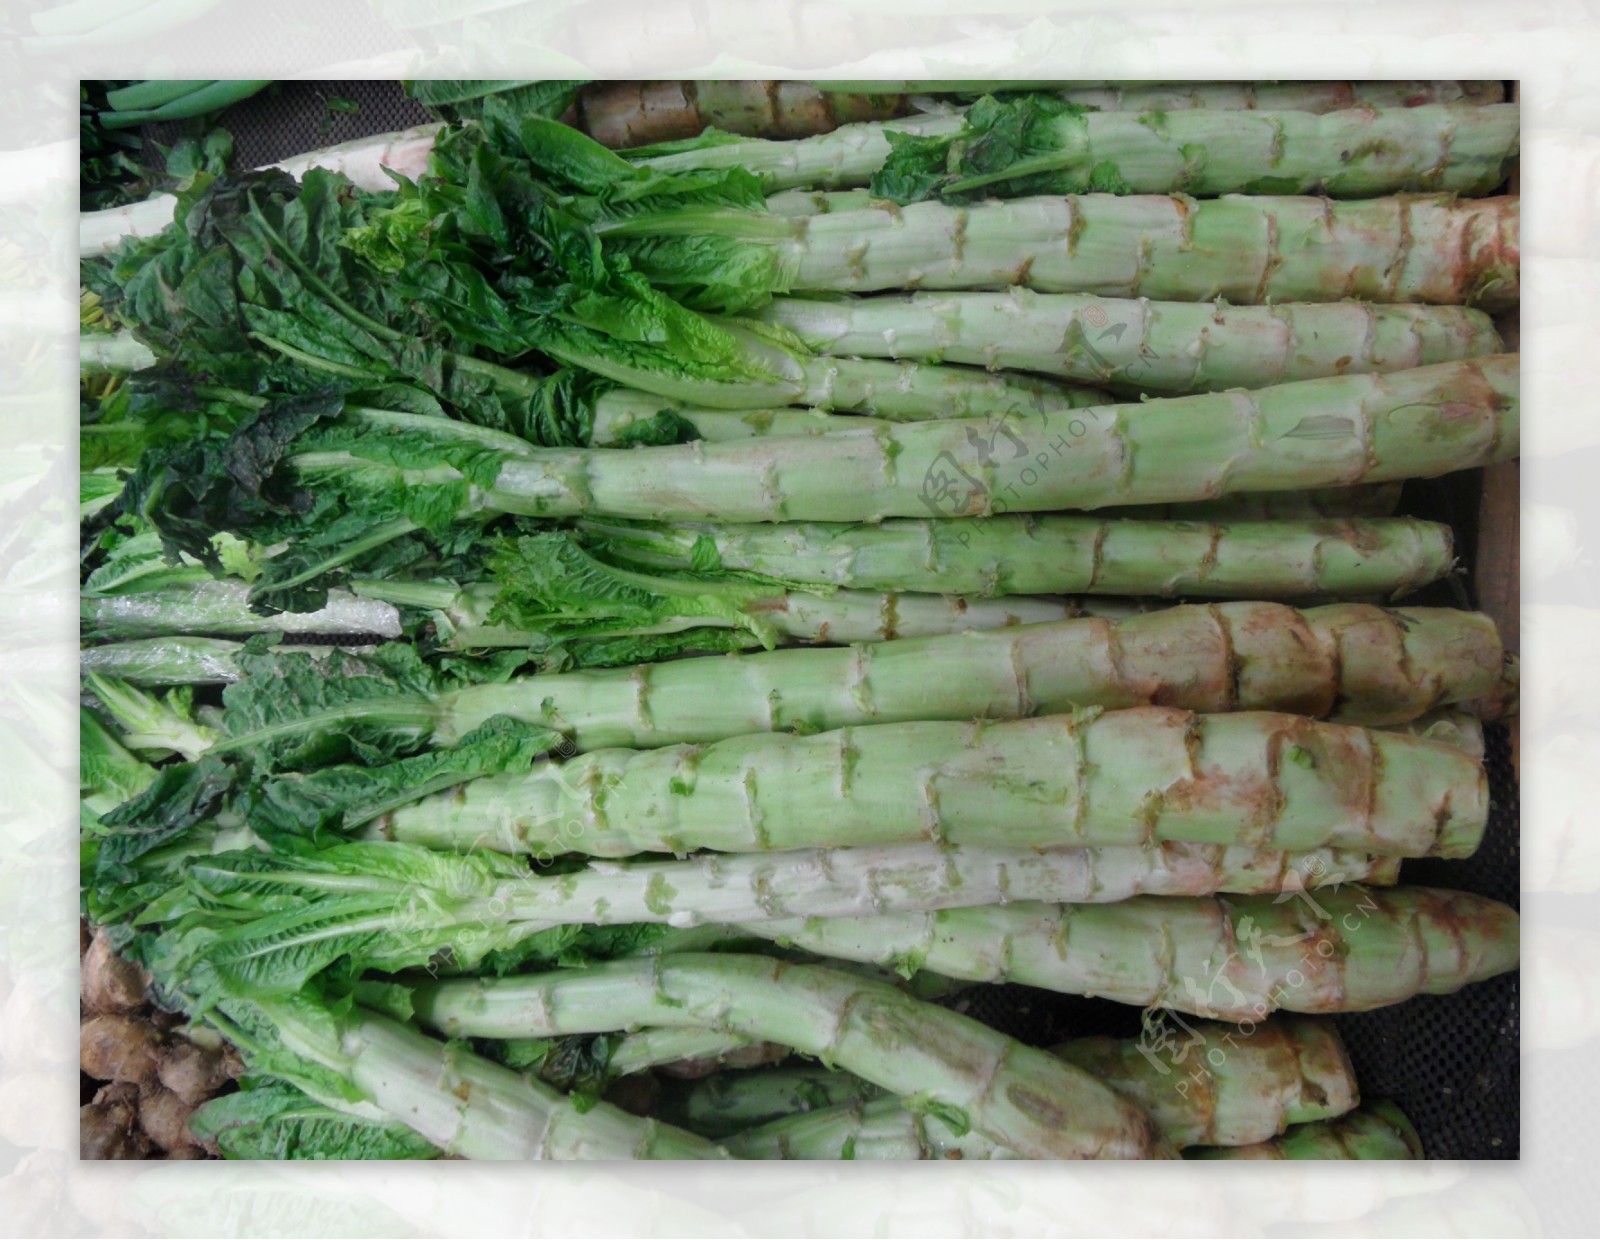 美食莴苣笋有机当季蔬菜莴苣摄影图配图高清摄影大图-千库网